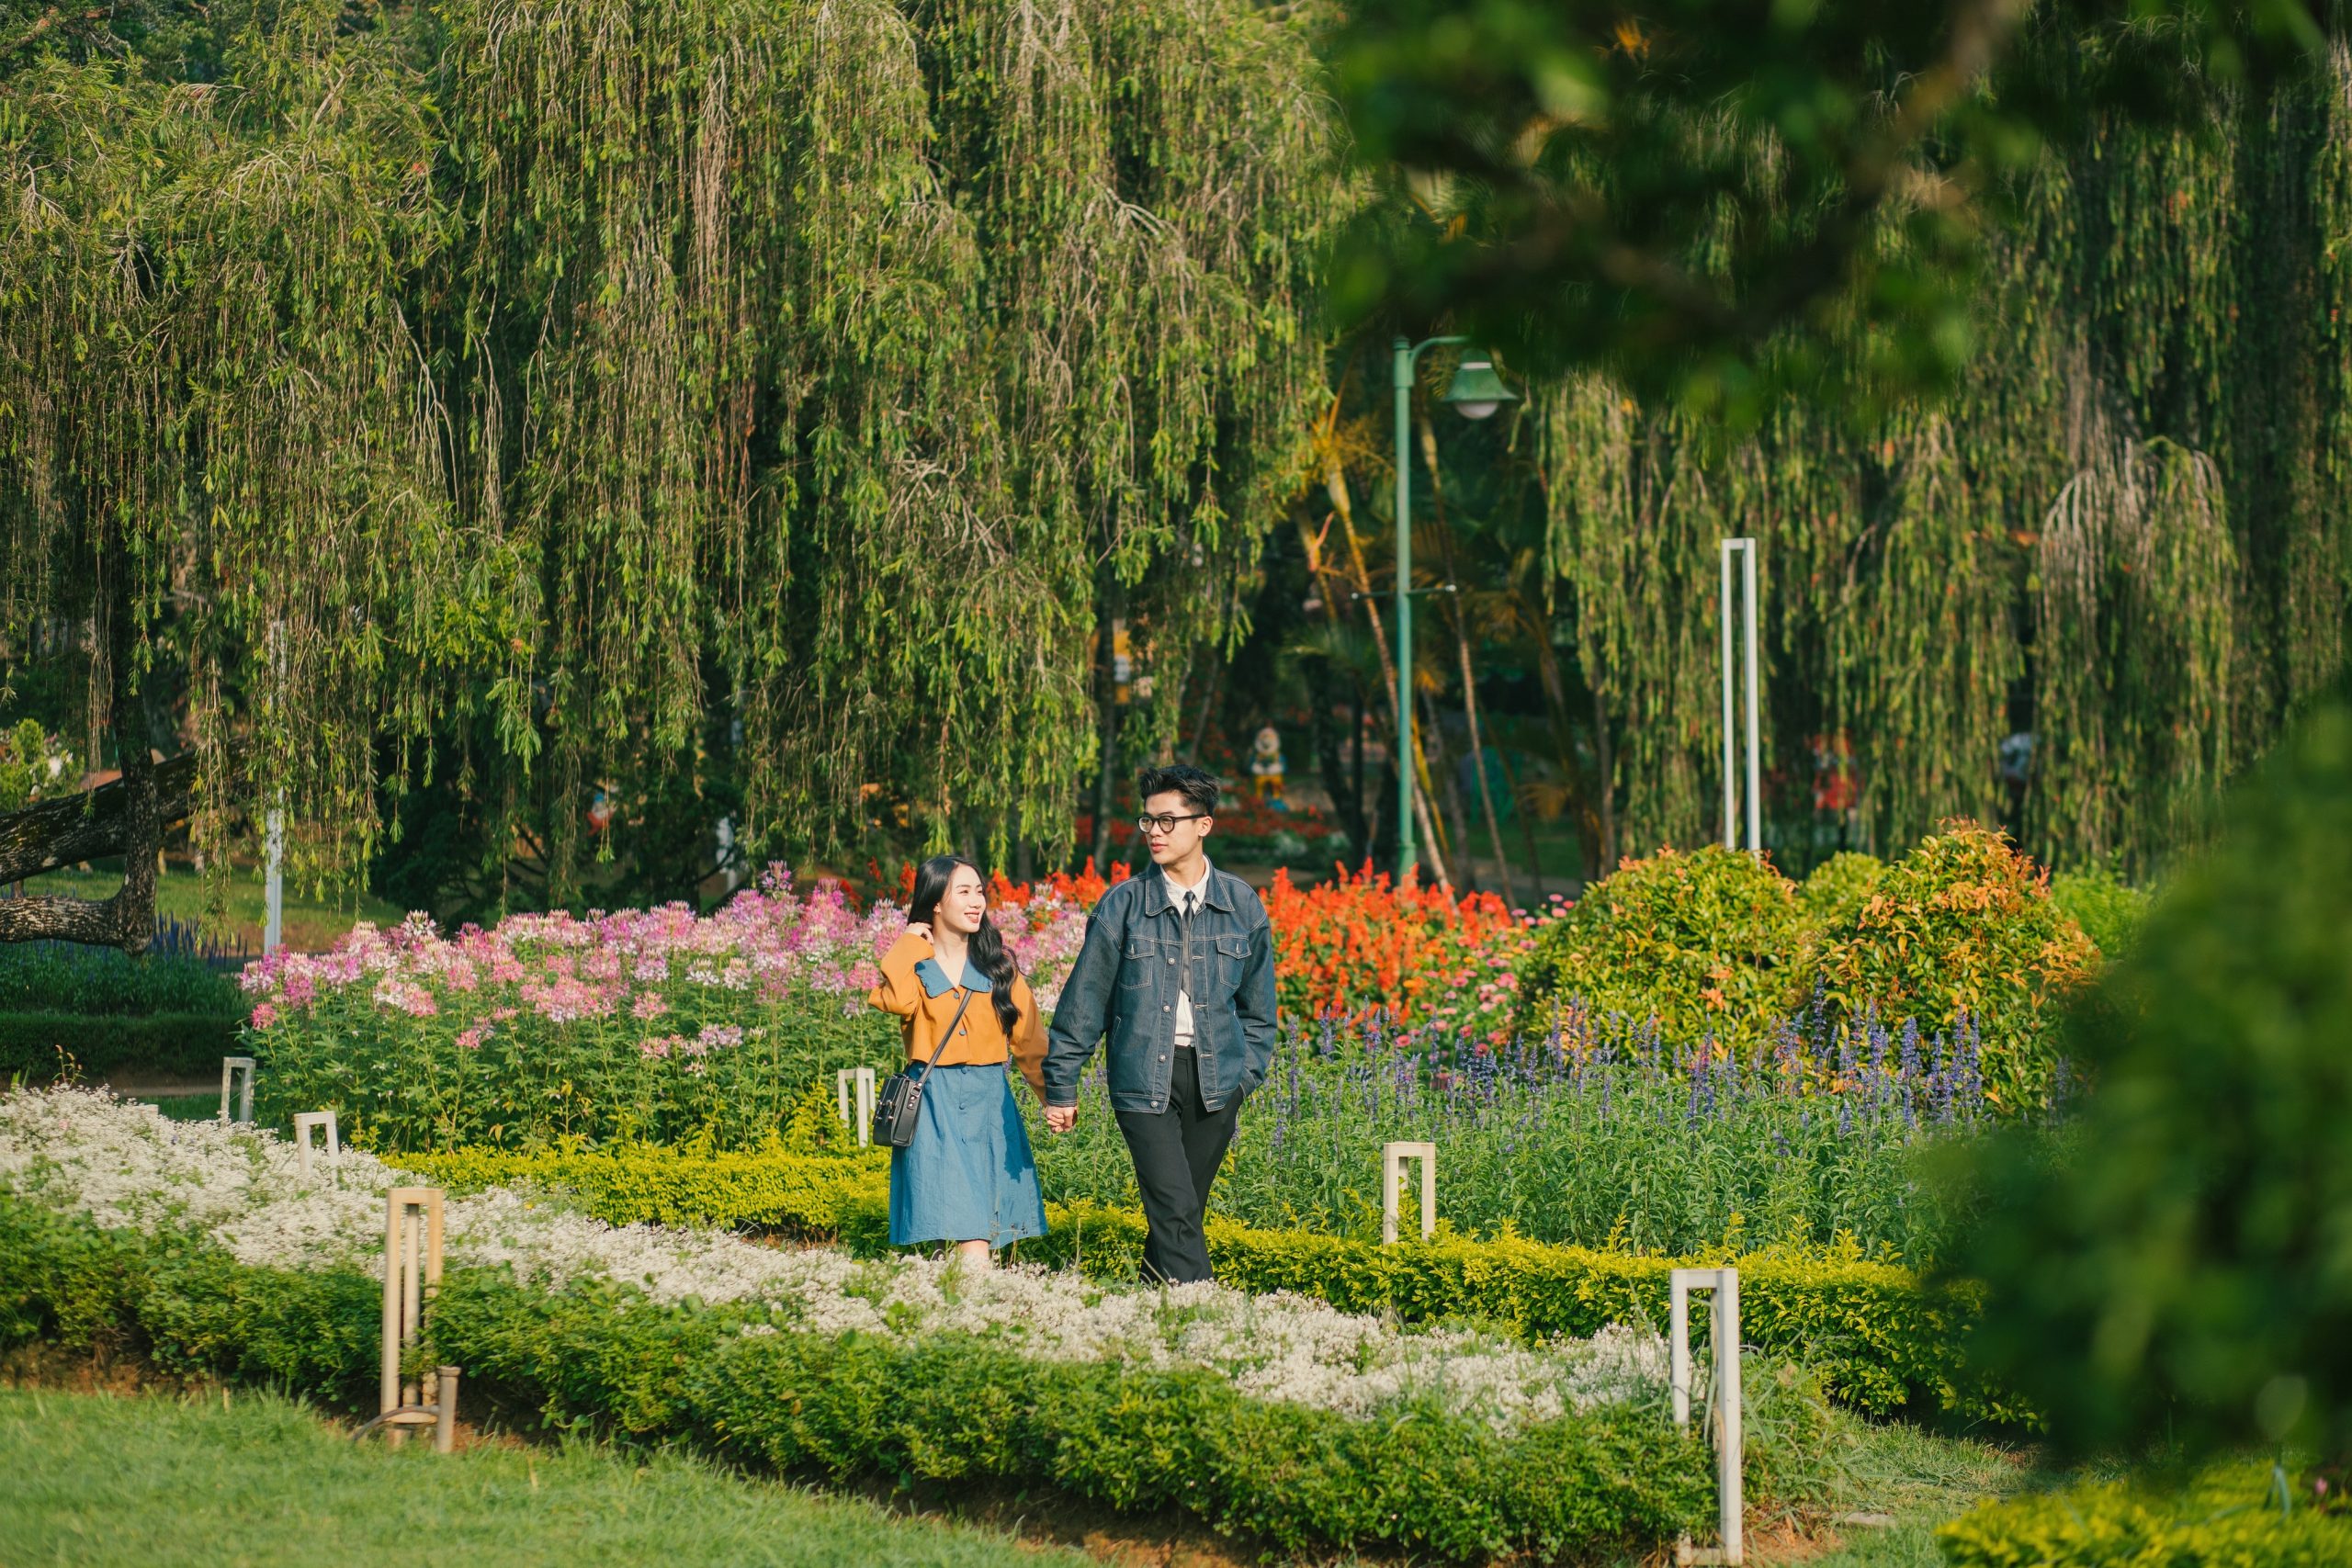 chụp ảnh cặp đôi tại vườn hoa thành phố